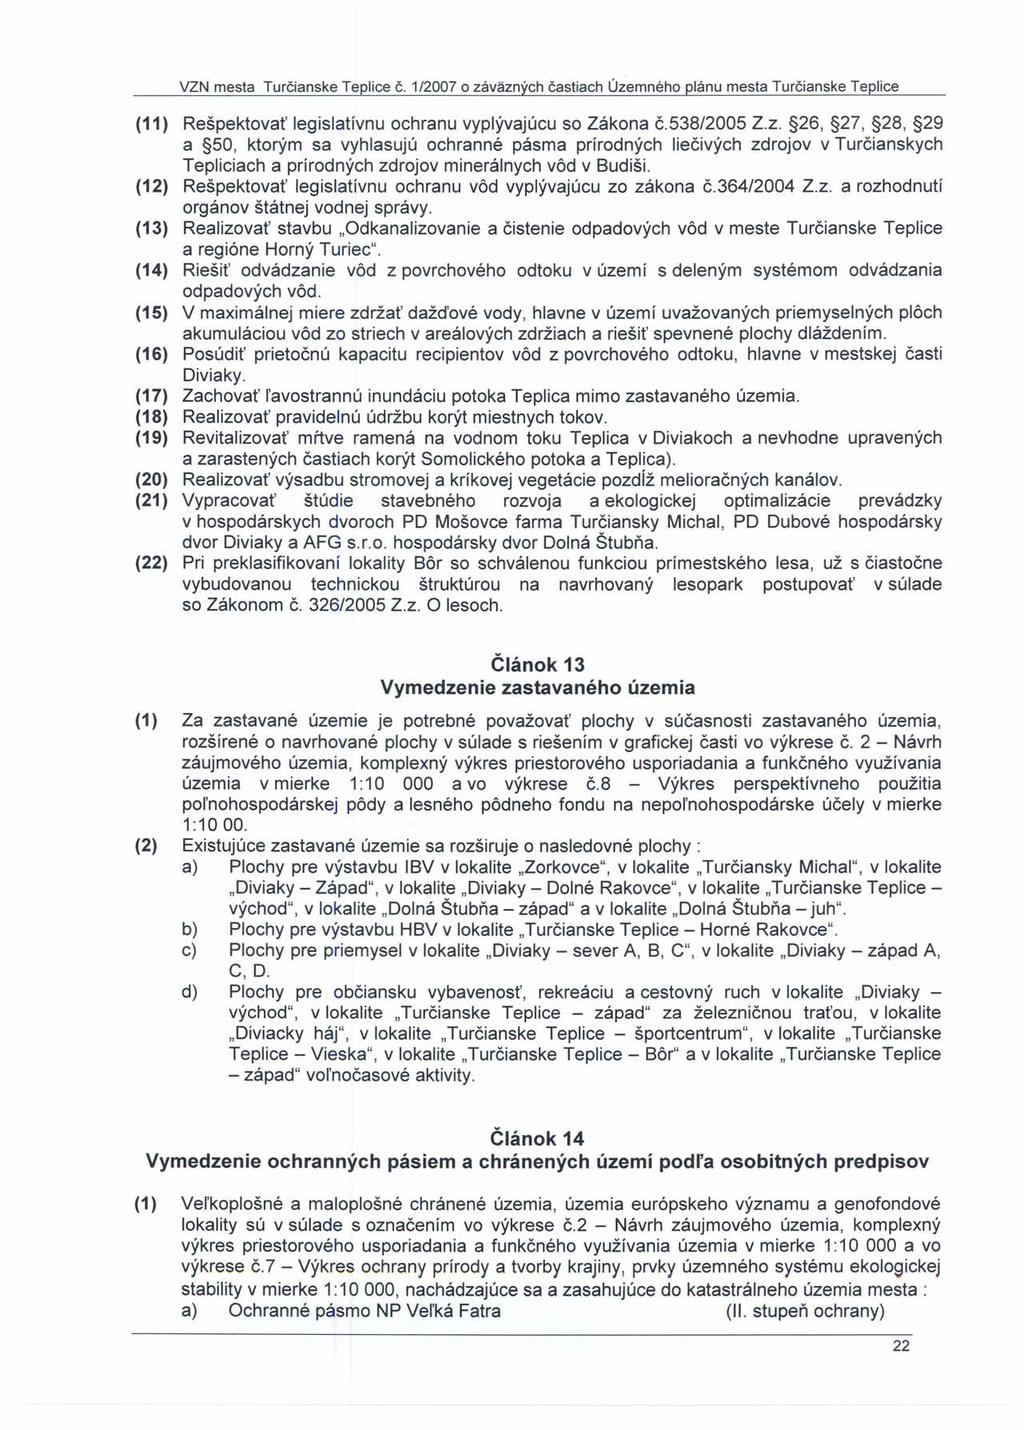 VZN mesta Turčianske Teplice Č. 1/2007 o záväzných častiach Územného plánu mesta Turčianske Teplice (11) Rešpektovať legislatívnu ochranu vyplývajúcu so Zákona č.538/2005 Z.Z. 26, 2?